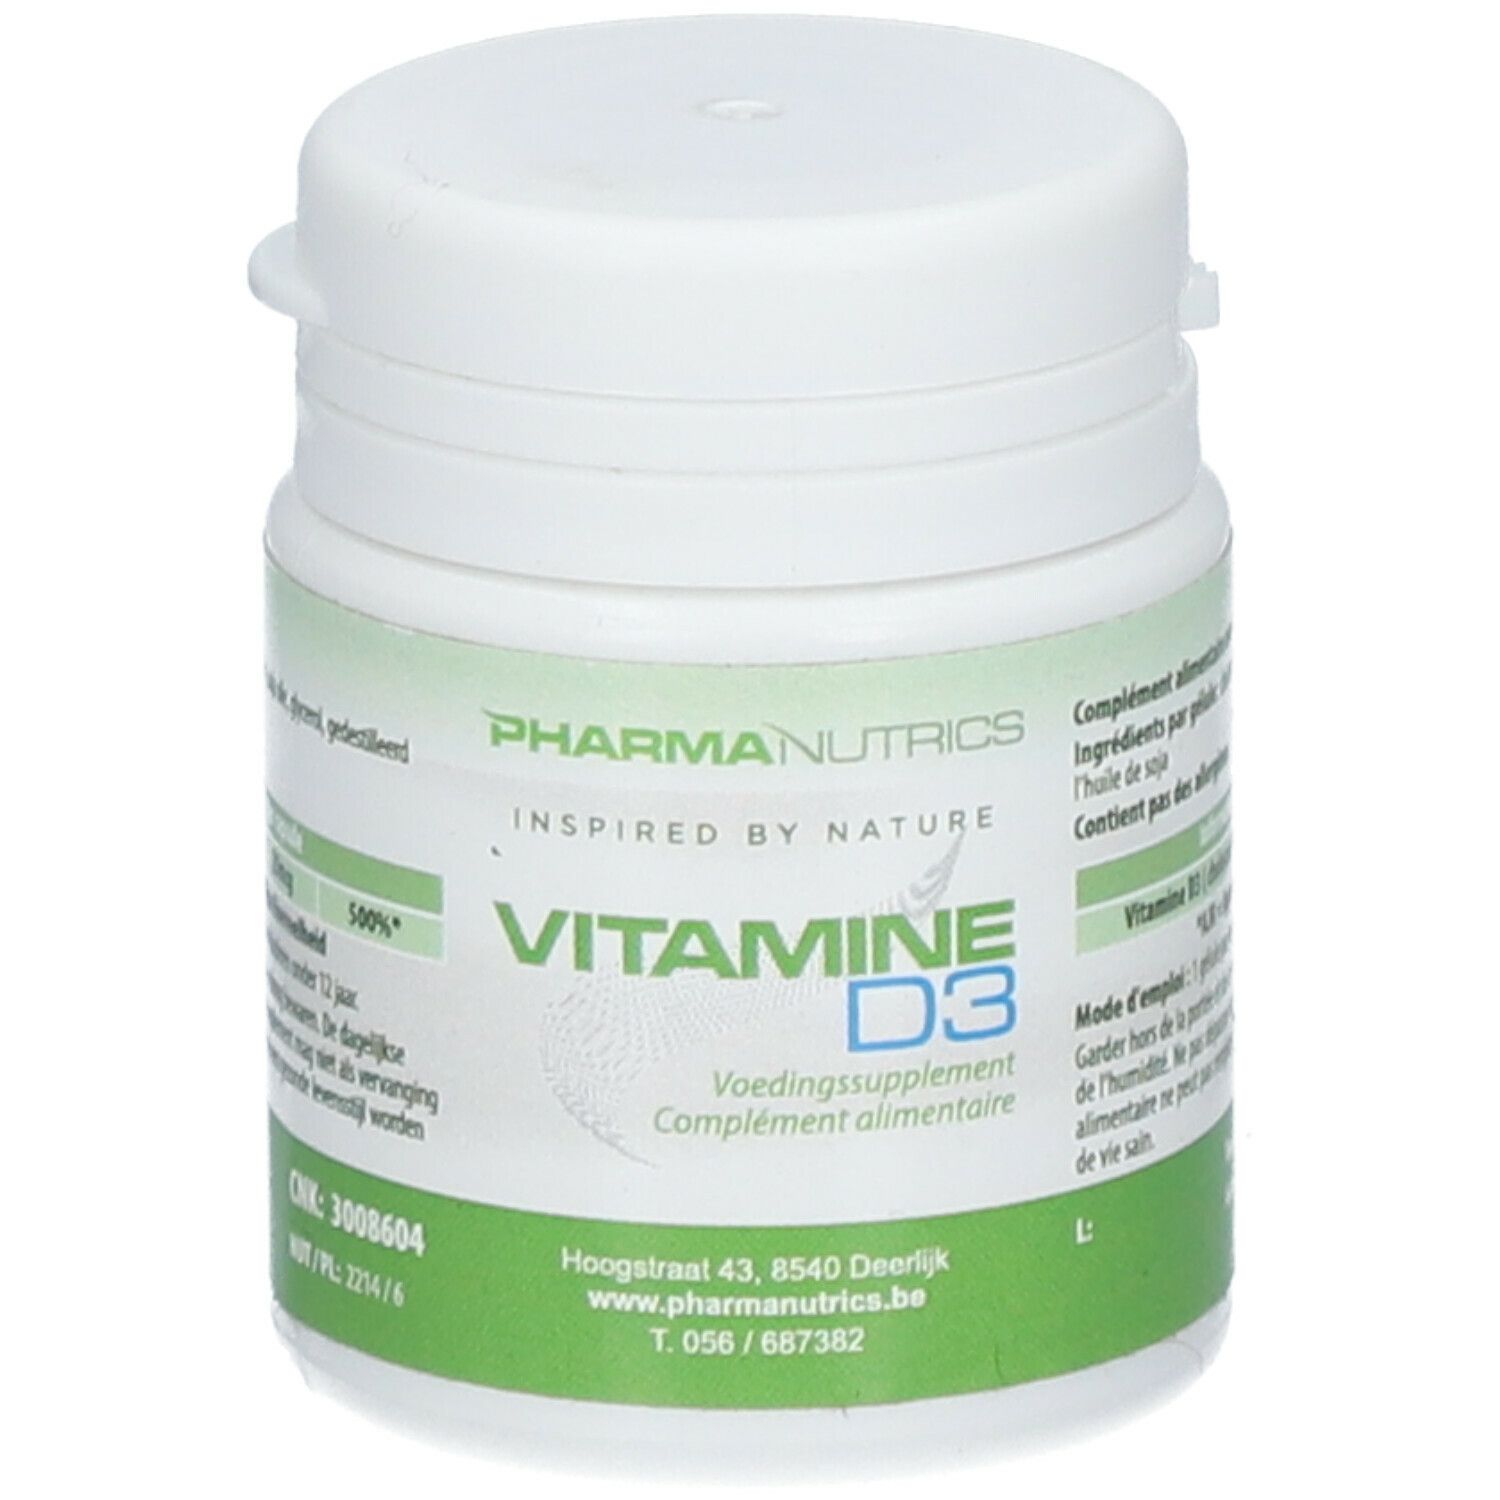 Pharmanutrics Vitamine D3